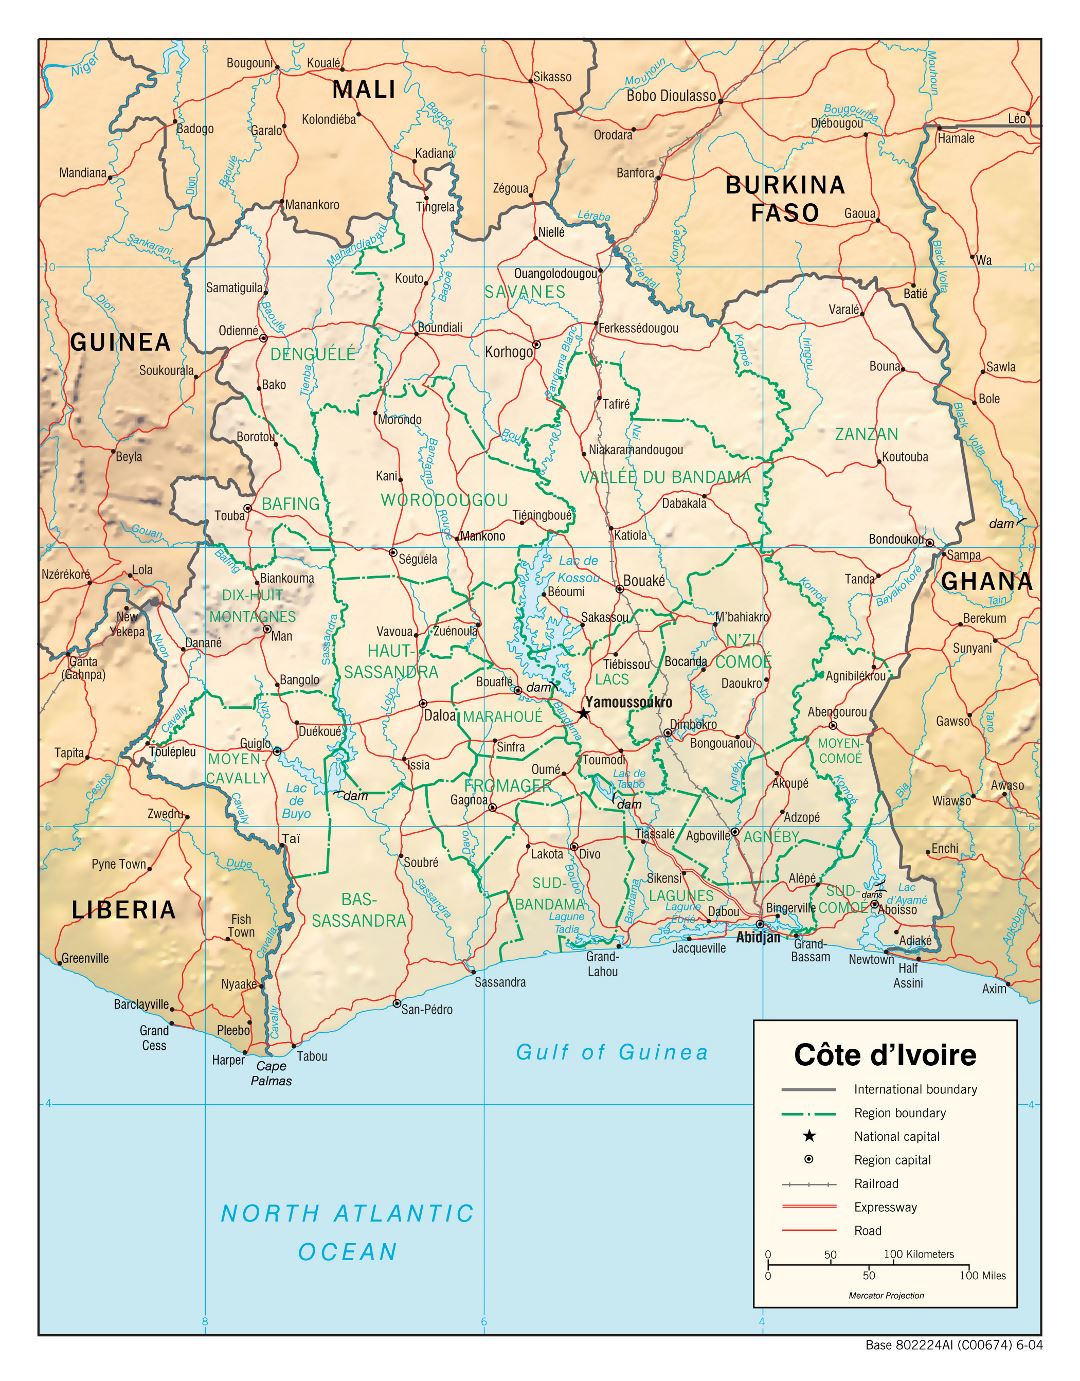 Большая детальная политическая и административная карта Кот-д'Ивуара с рельефом, дорогами, железными дорогами и крупными городами - 2004